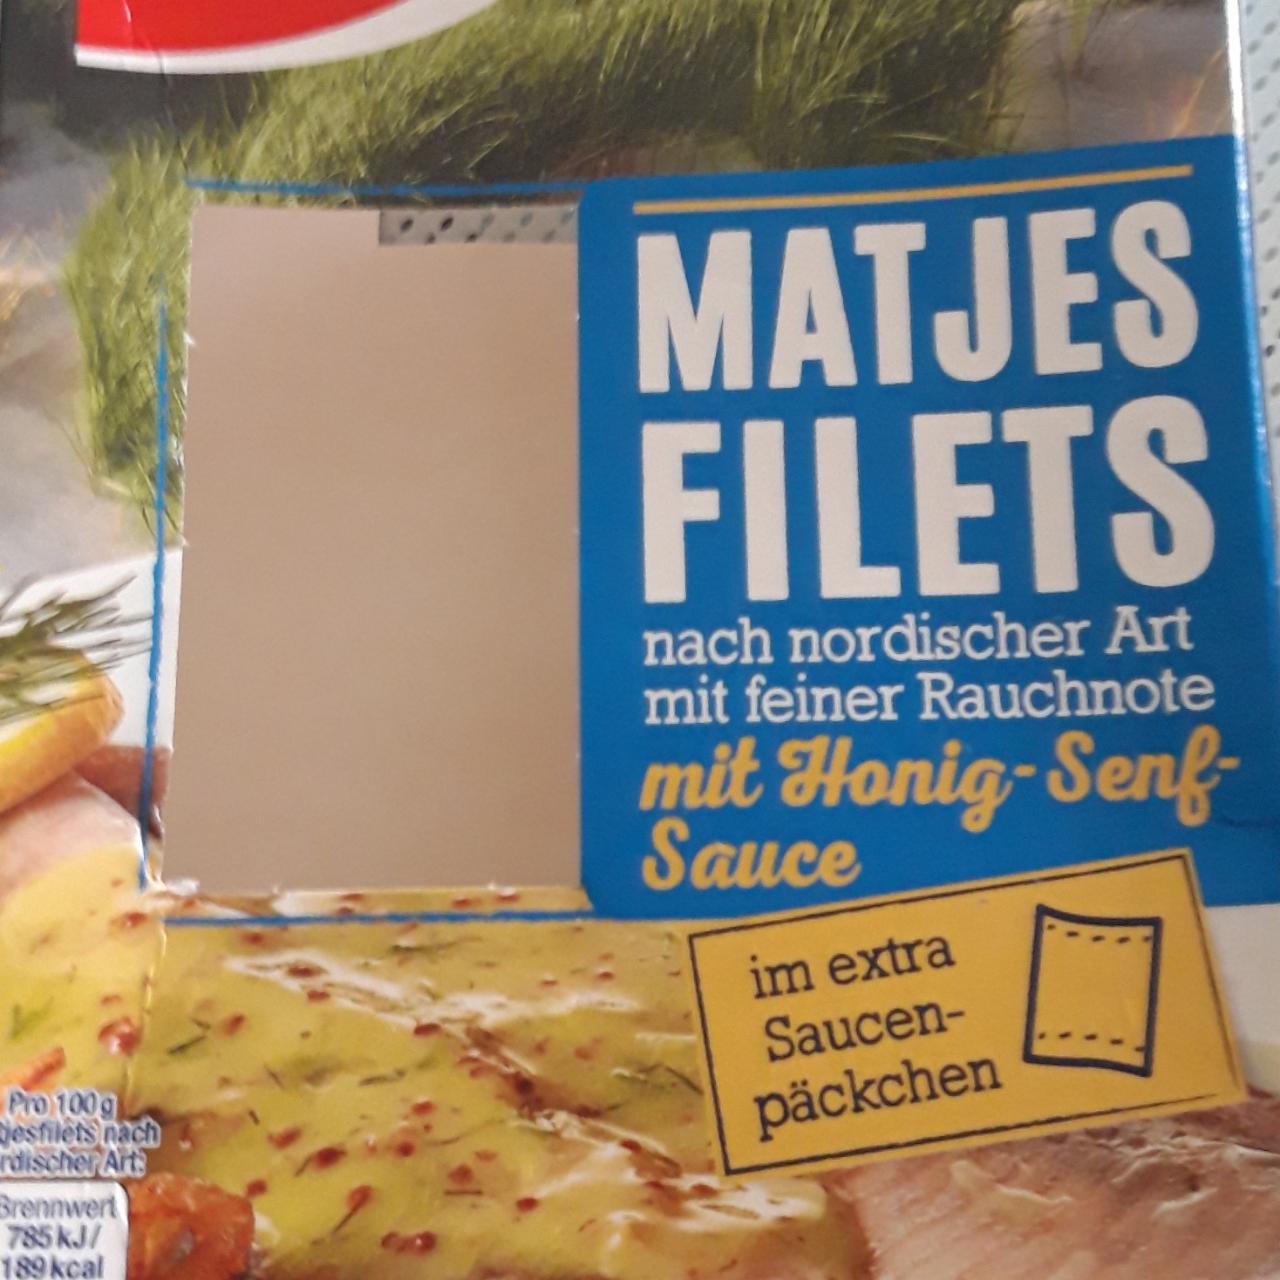 Fotografie - Matjes Filets nach nordischer Art mit gruber Rauchnote mit Honig-Senf-Sauce Gut&Günstig